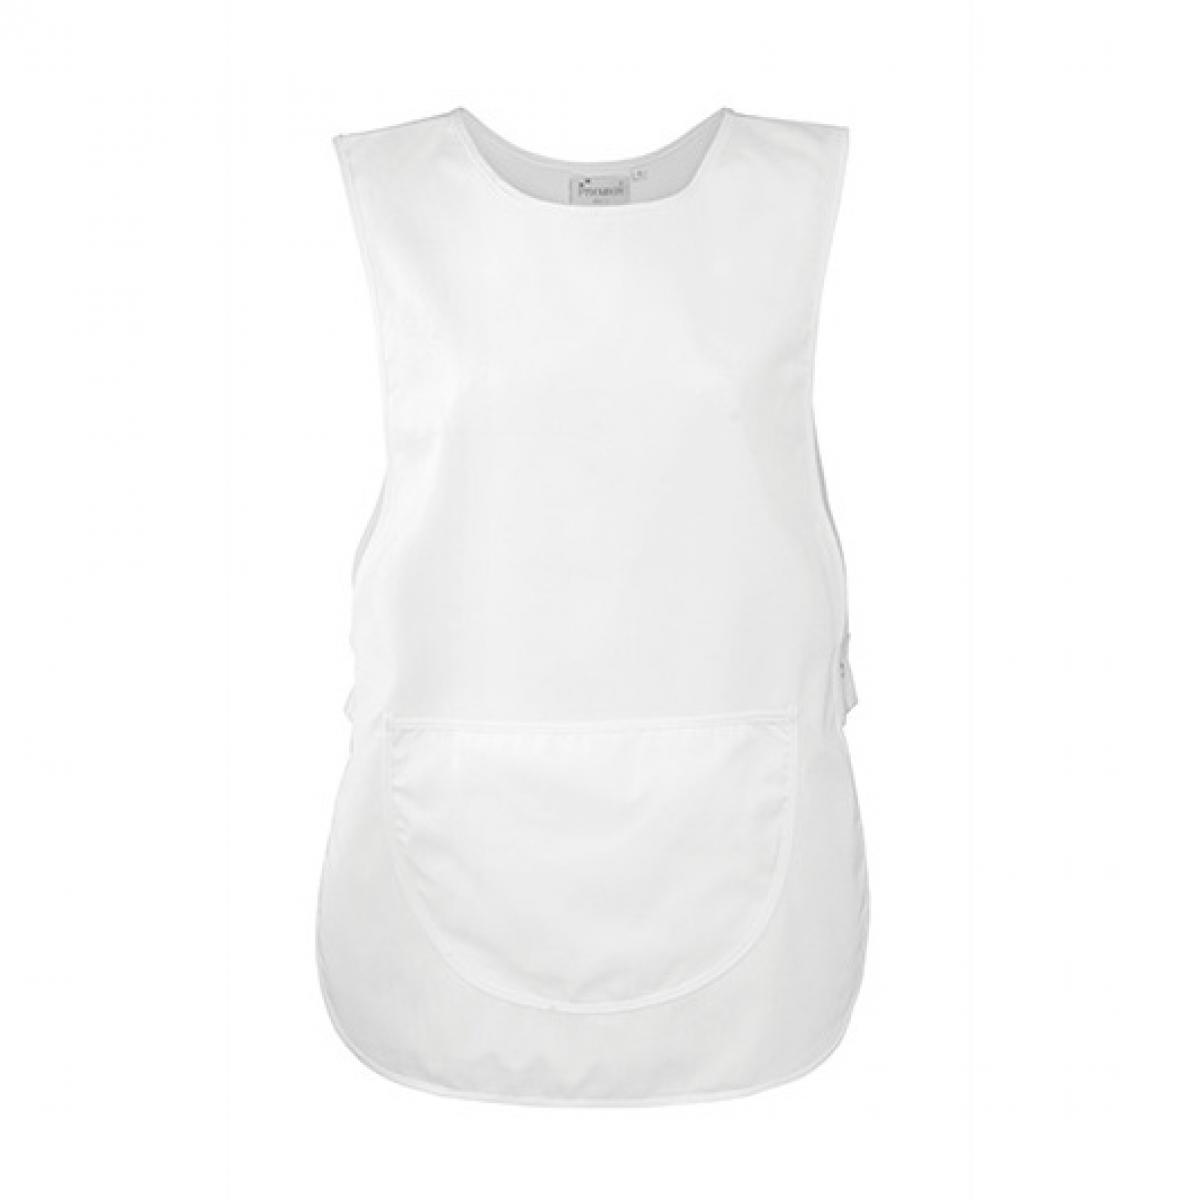 Hersteller: Premier Workwear Herstellernummer: PR171 Artikelbezeichnung: Women`s Pocket Tabard - Waschbar bis 60 °C Farbe: White